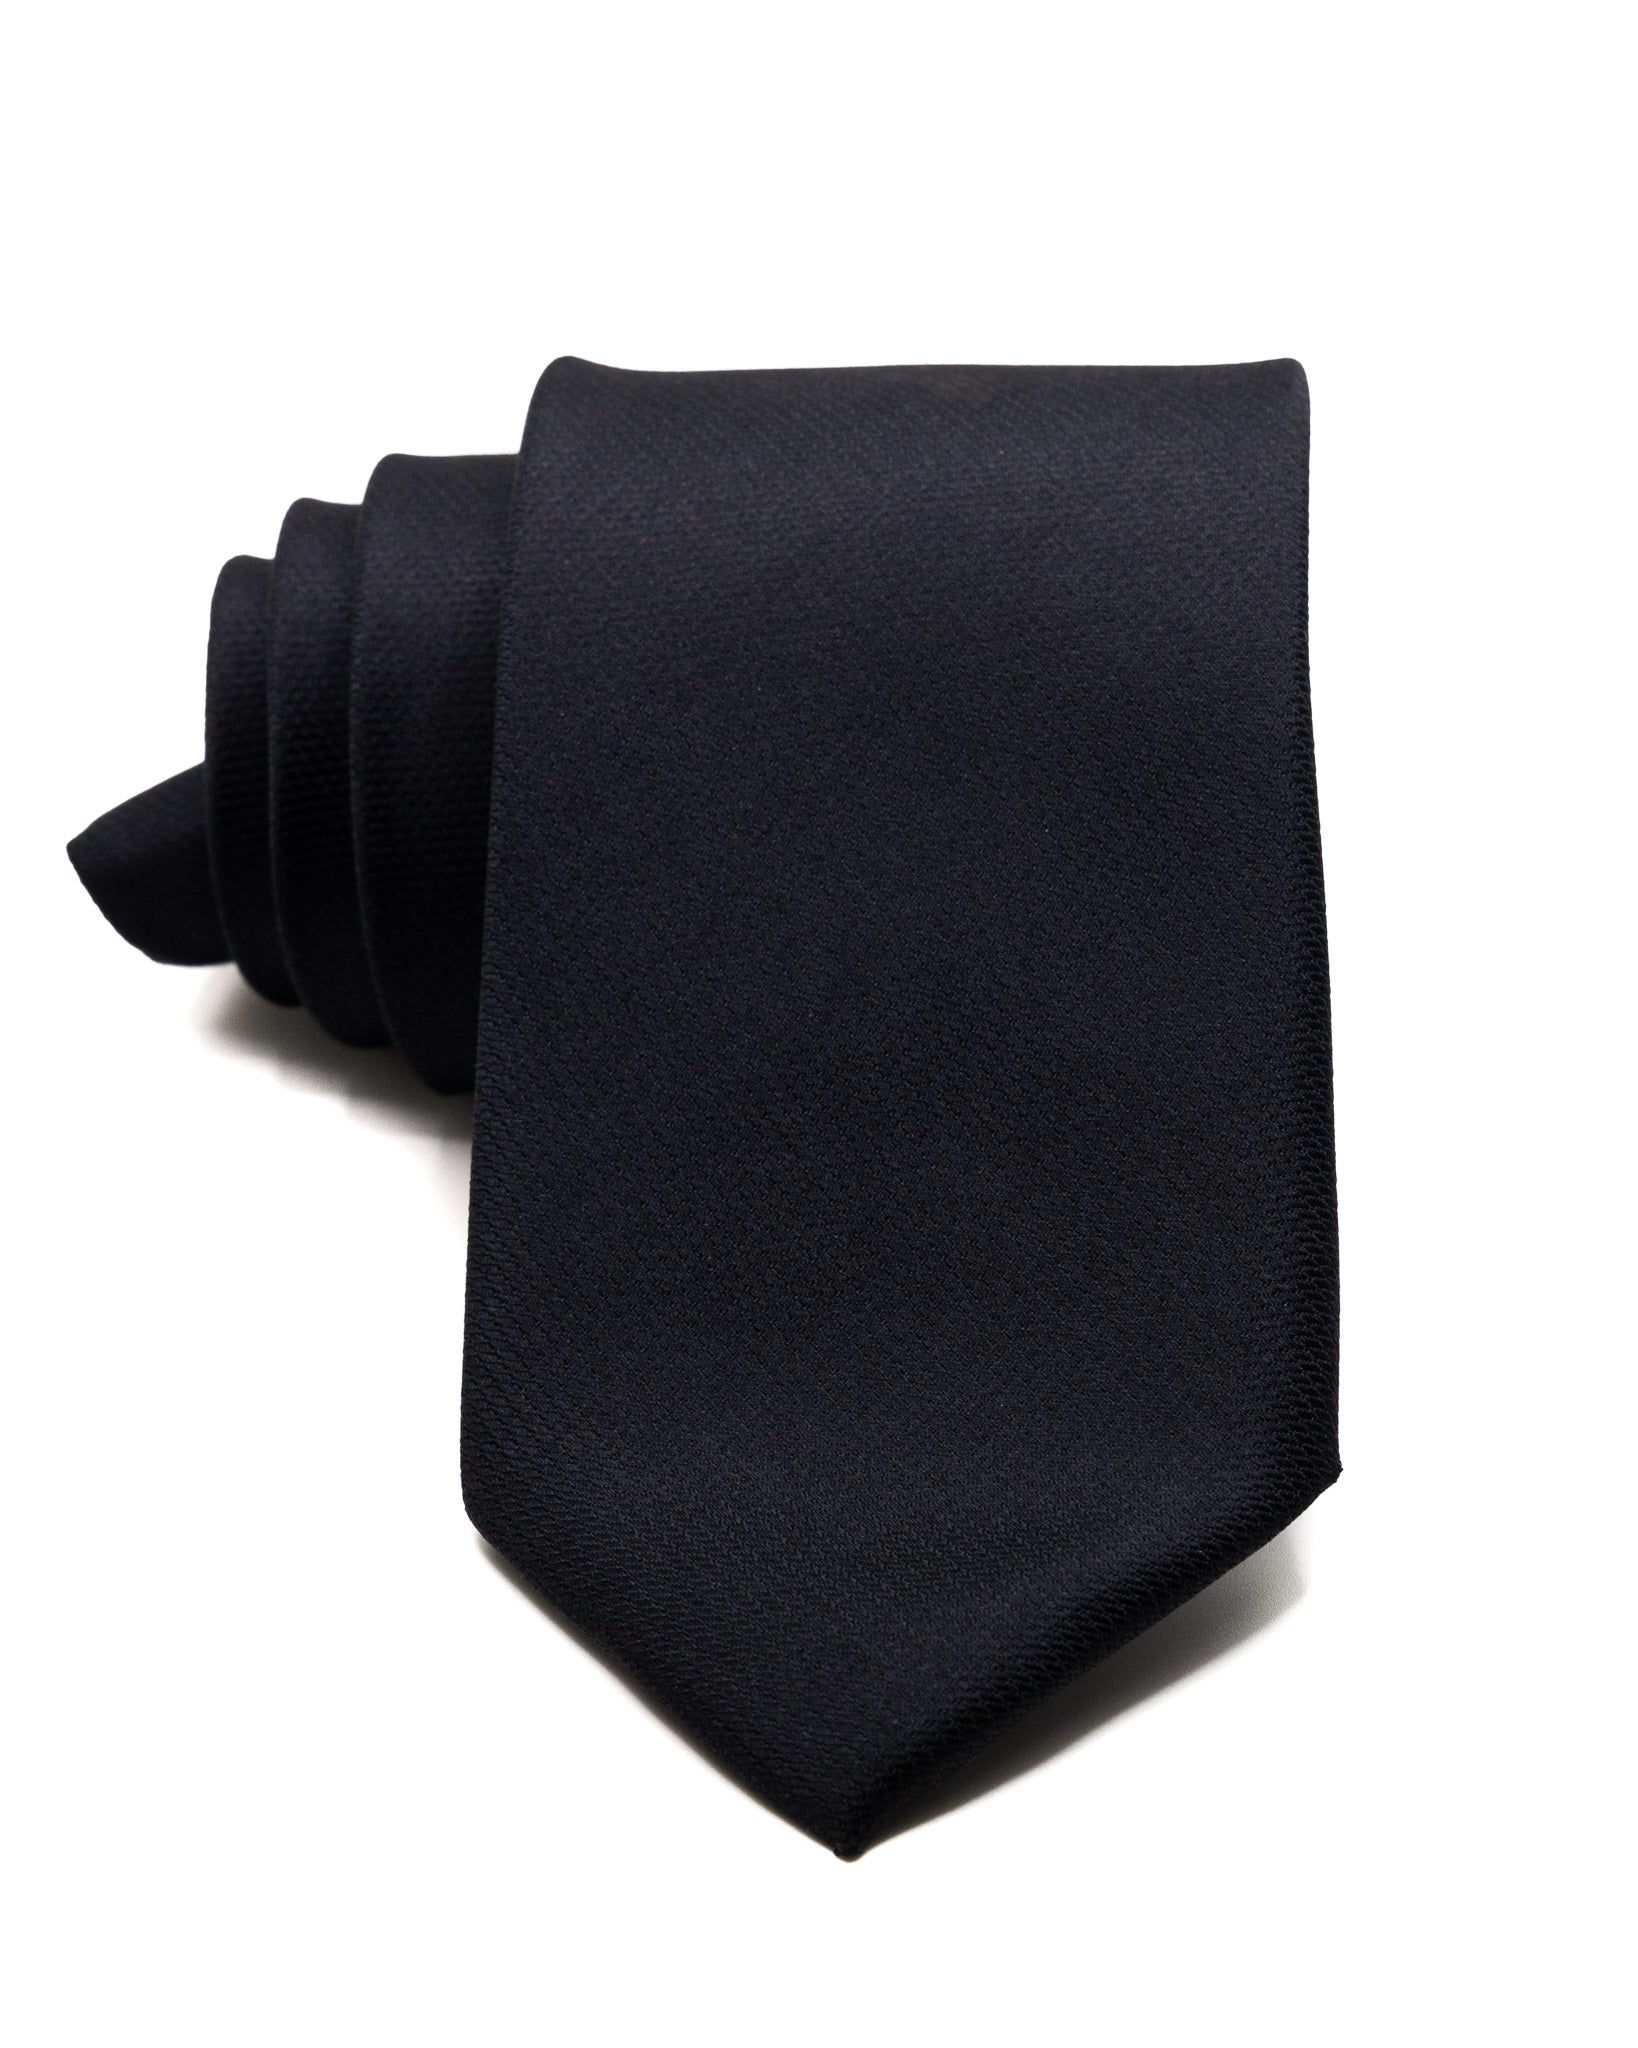 Cravate - en soie texturée noire